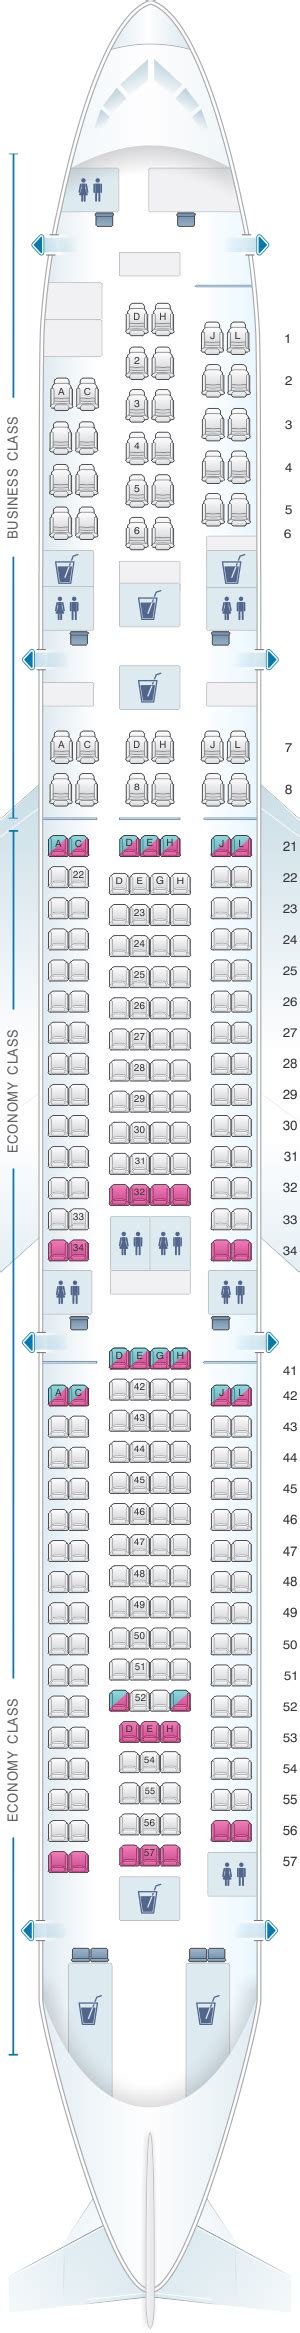 Finnair Airbus A321 Seat Map